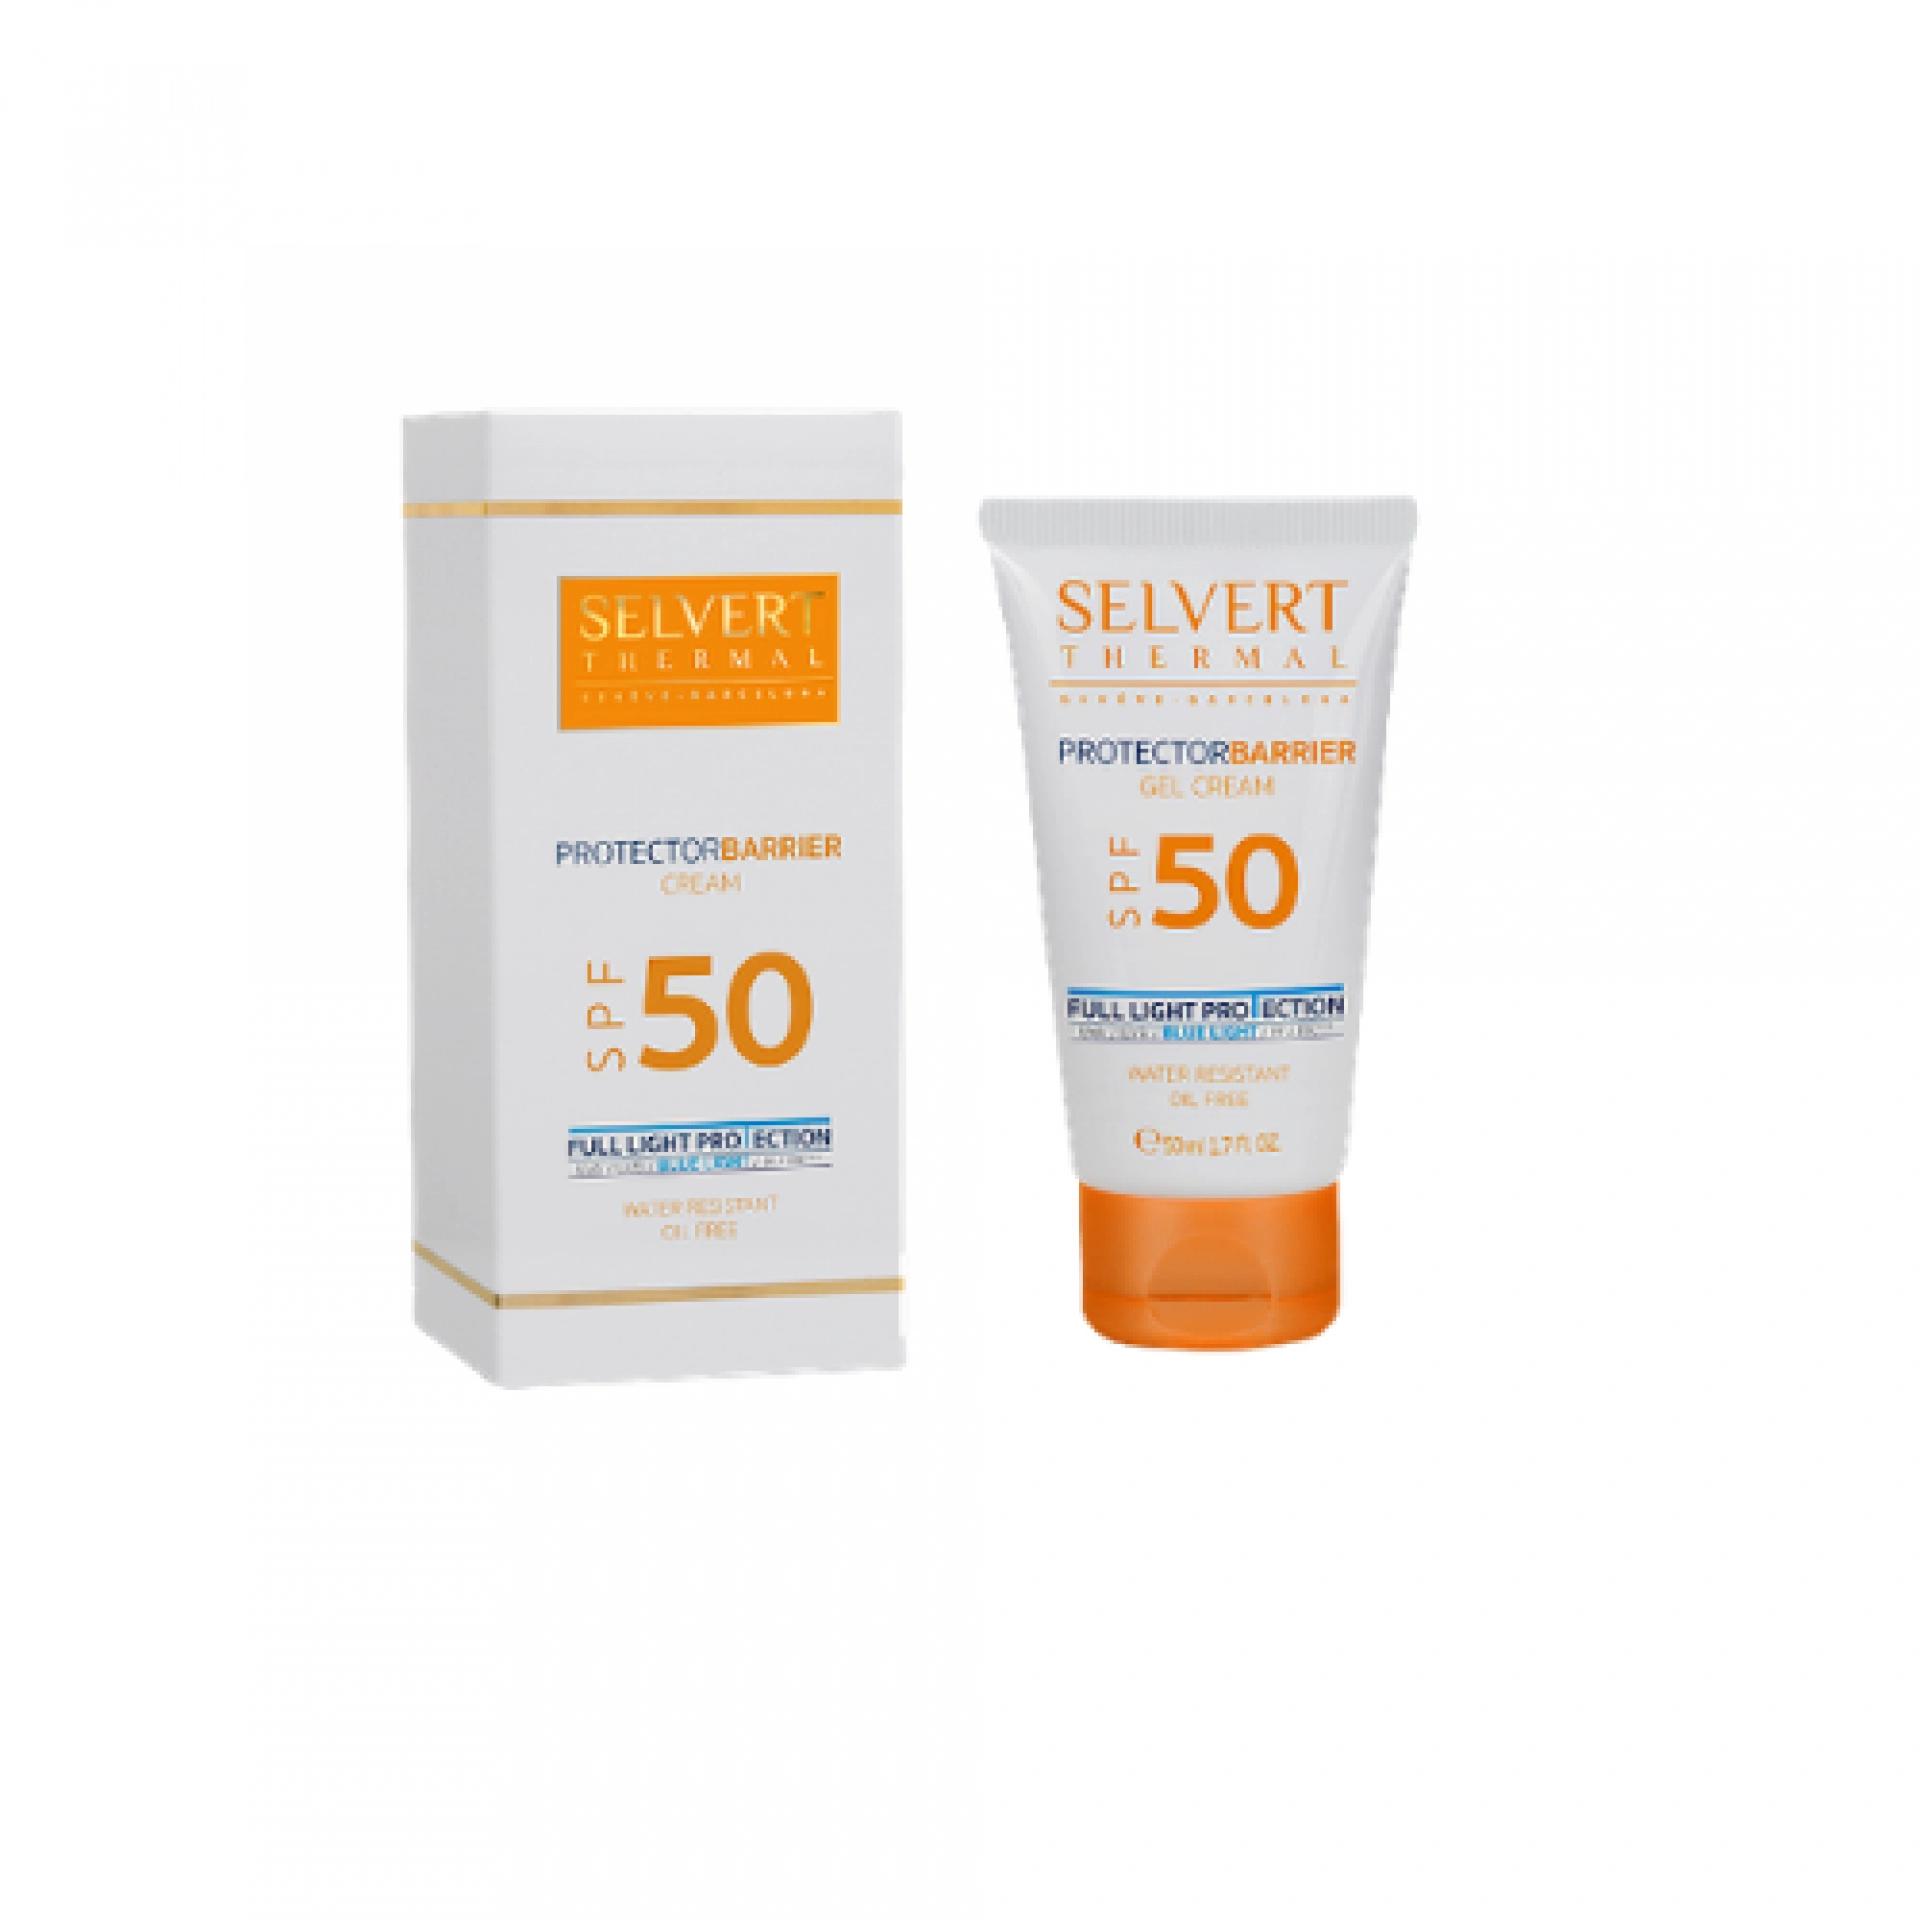 Protector Barrier Cream | Crema facial 50ml - Selvert Thermal ®